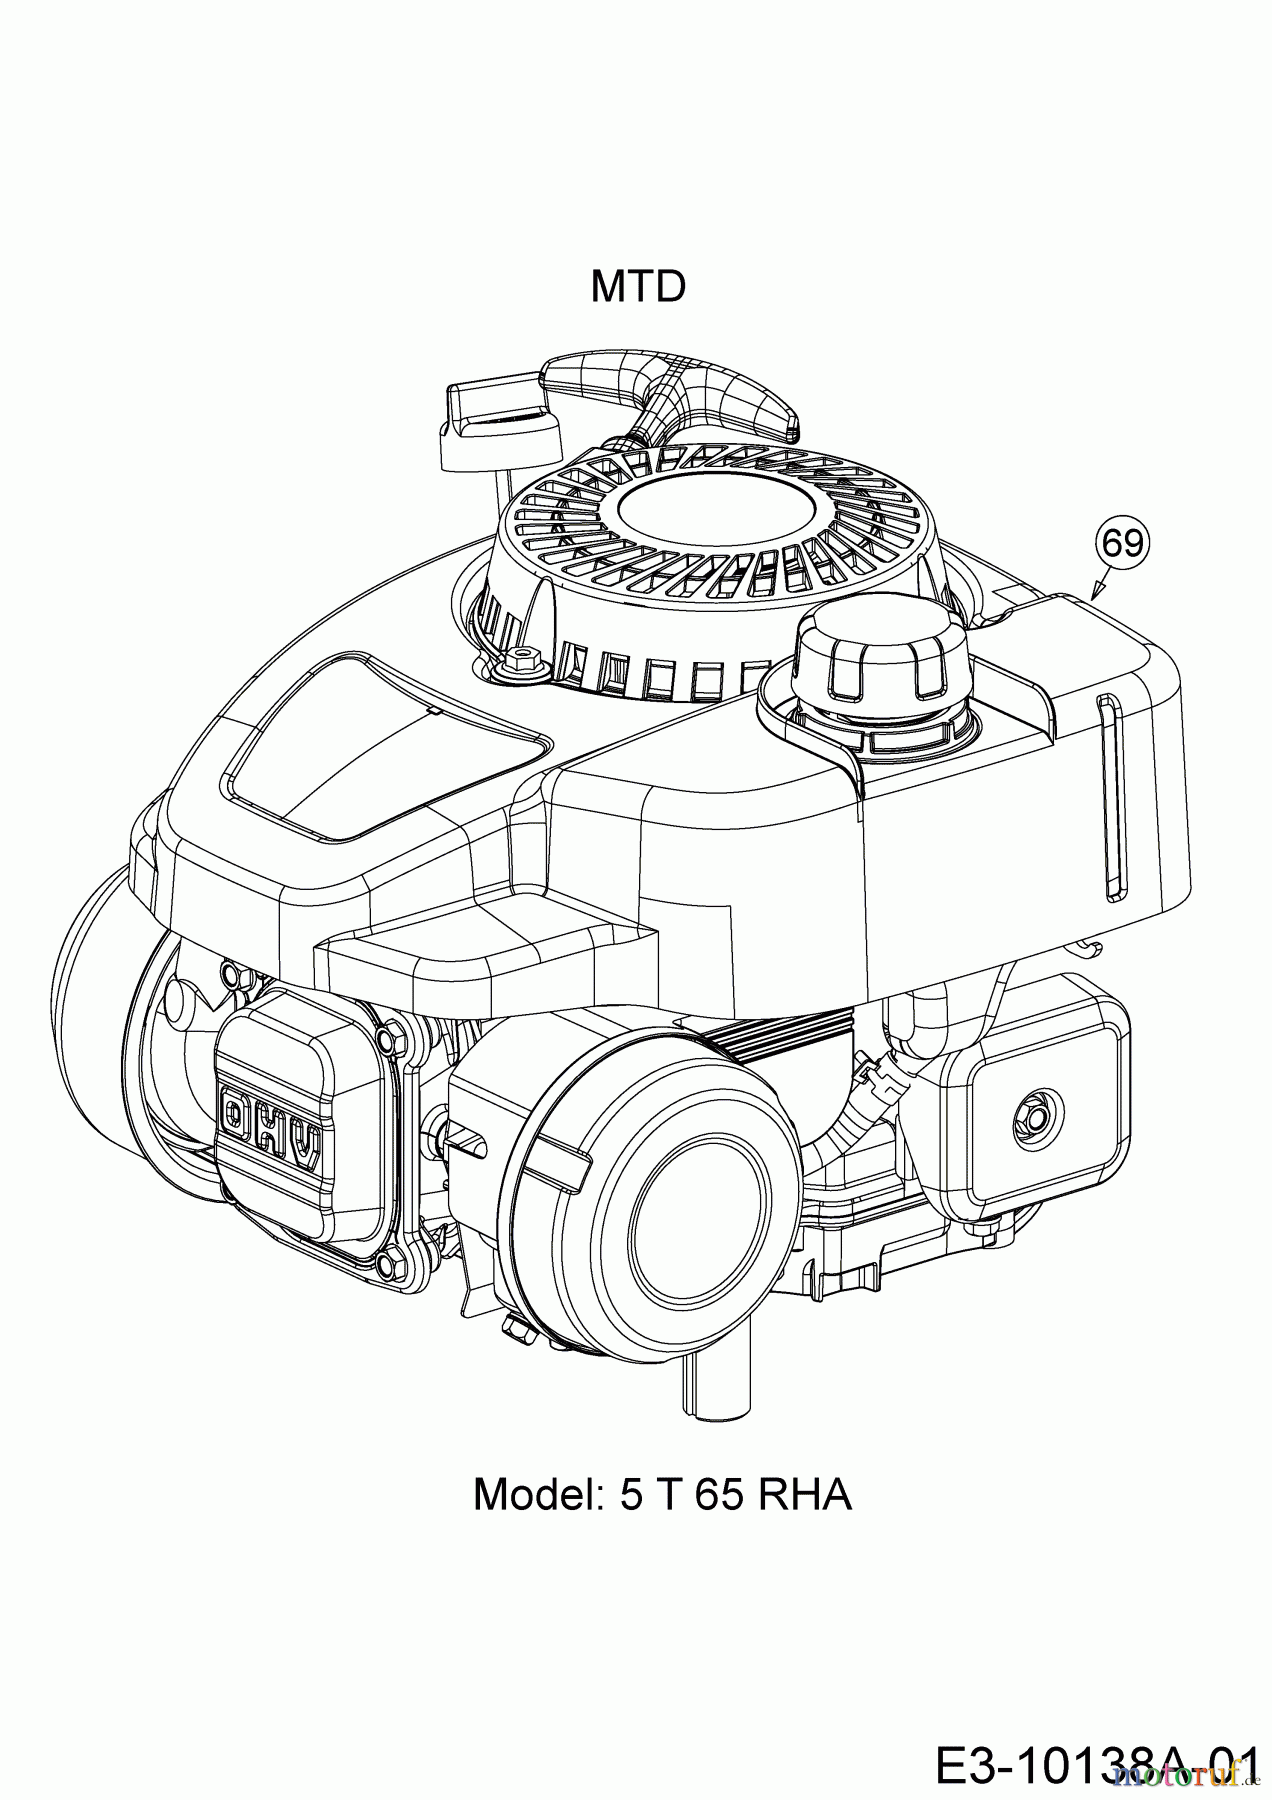  Wolf-Garten Motormäher mit Antrieb A 4600 A 12A-TOSC650  (2017) Motor MTD